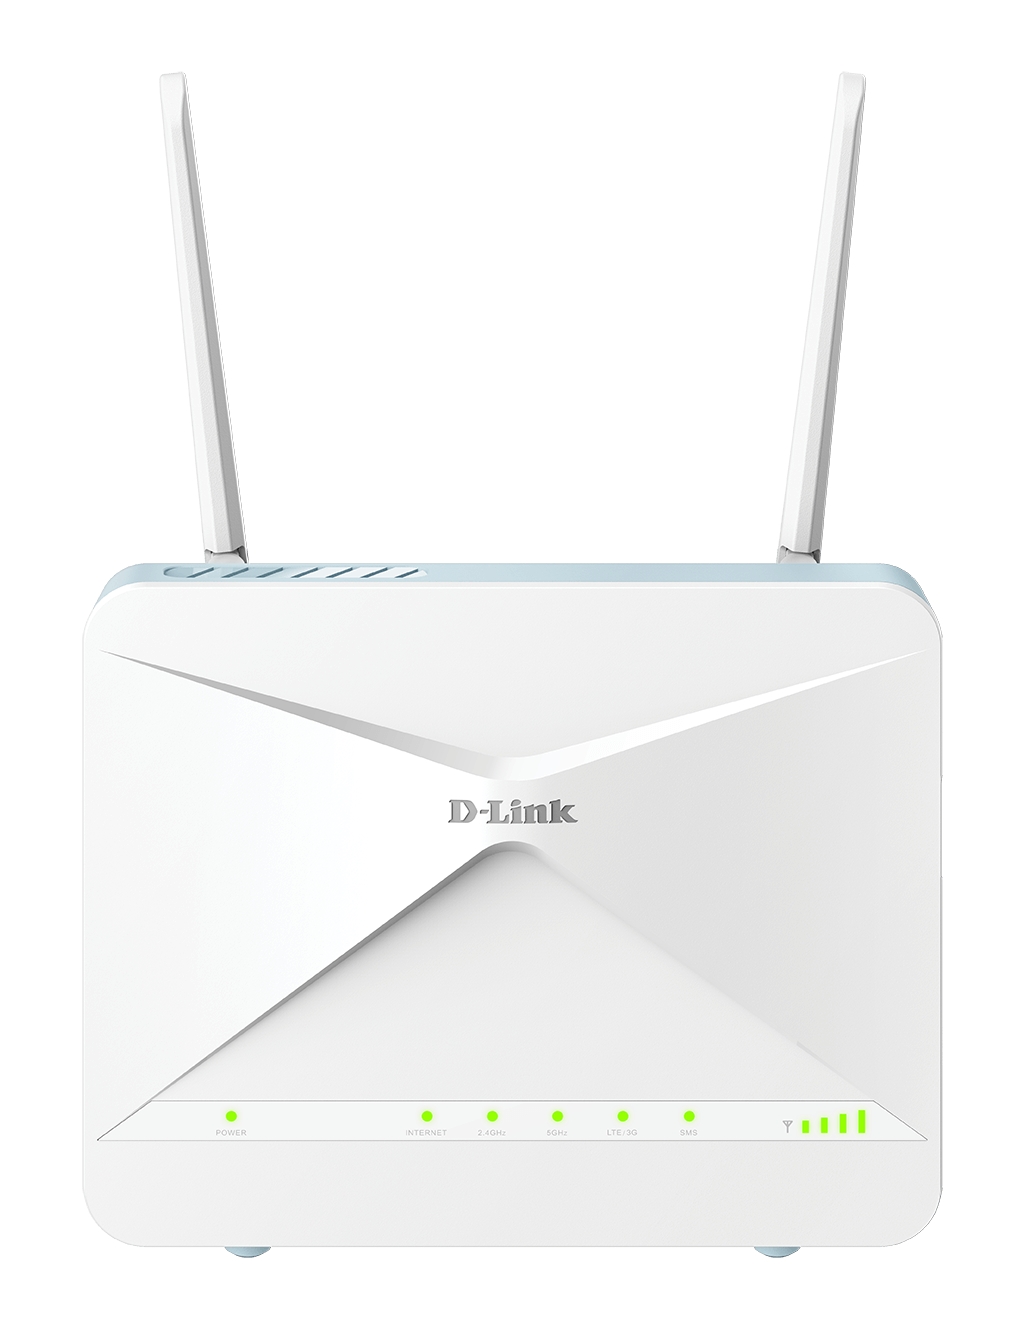 D-Link Eagle Pro AI AX1500 Mesh WiFi Routeur Double Bande - Jusqu'à 1200 Mbps - 3 Ports LAN Gigabit 10/100/1000 Mbps et 1 Port WAN Gigabit 10/100/1000 Mbps - 2 Antennes Externes